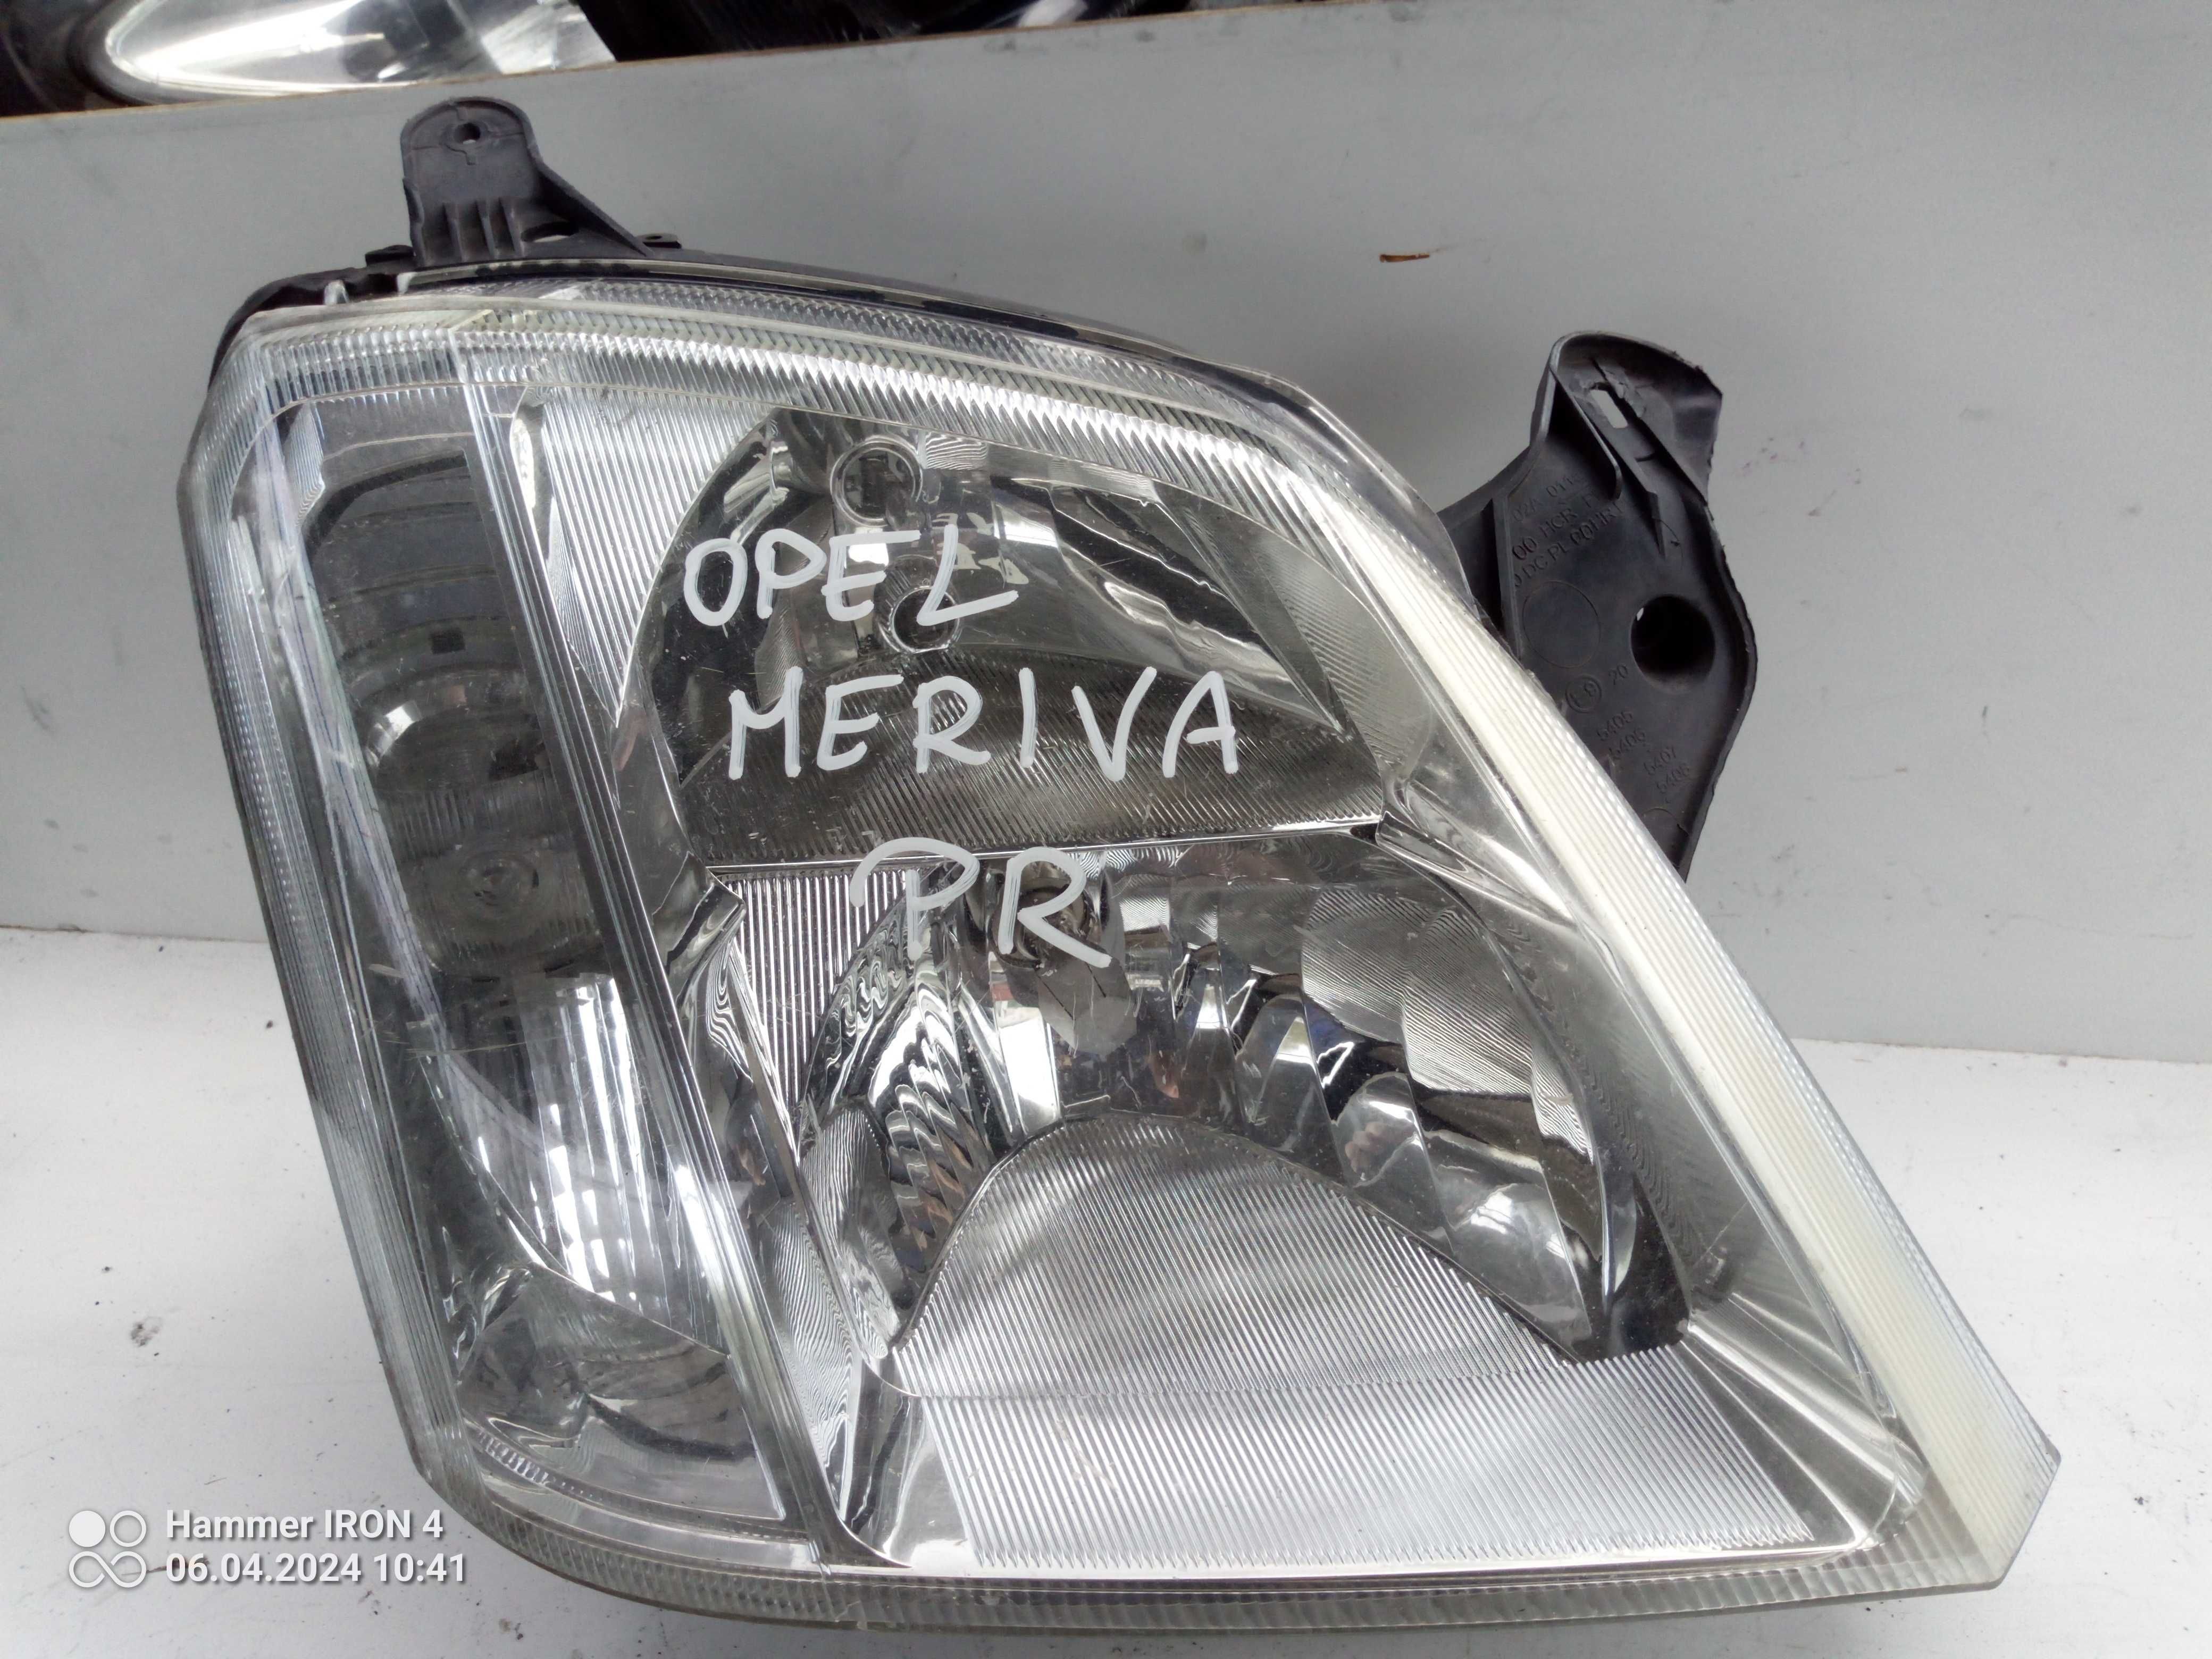 Lampa Opel Meriva pr